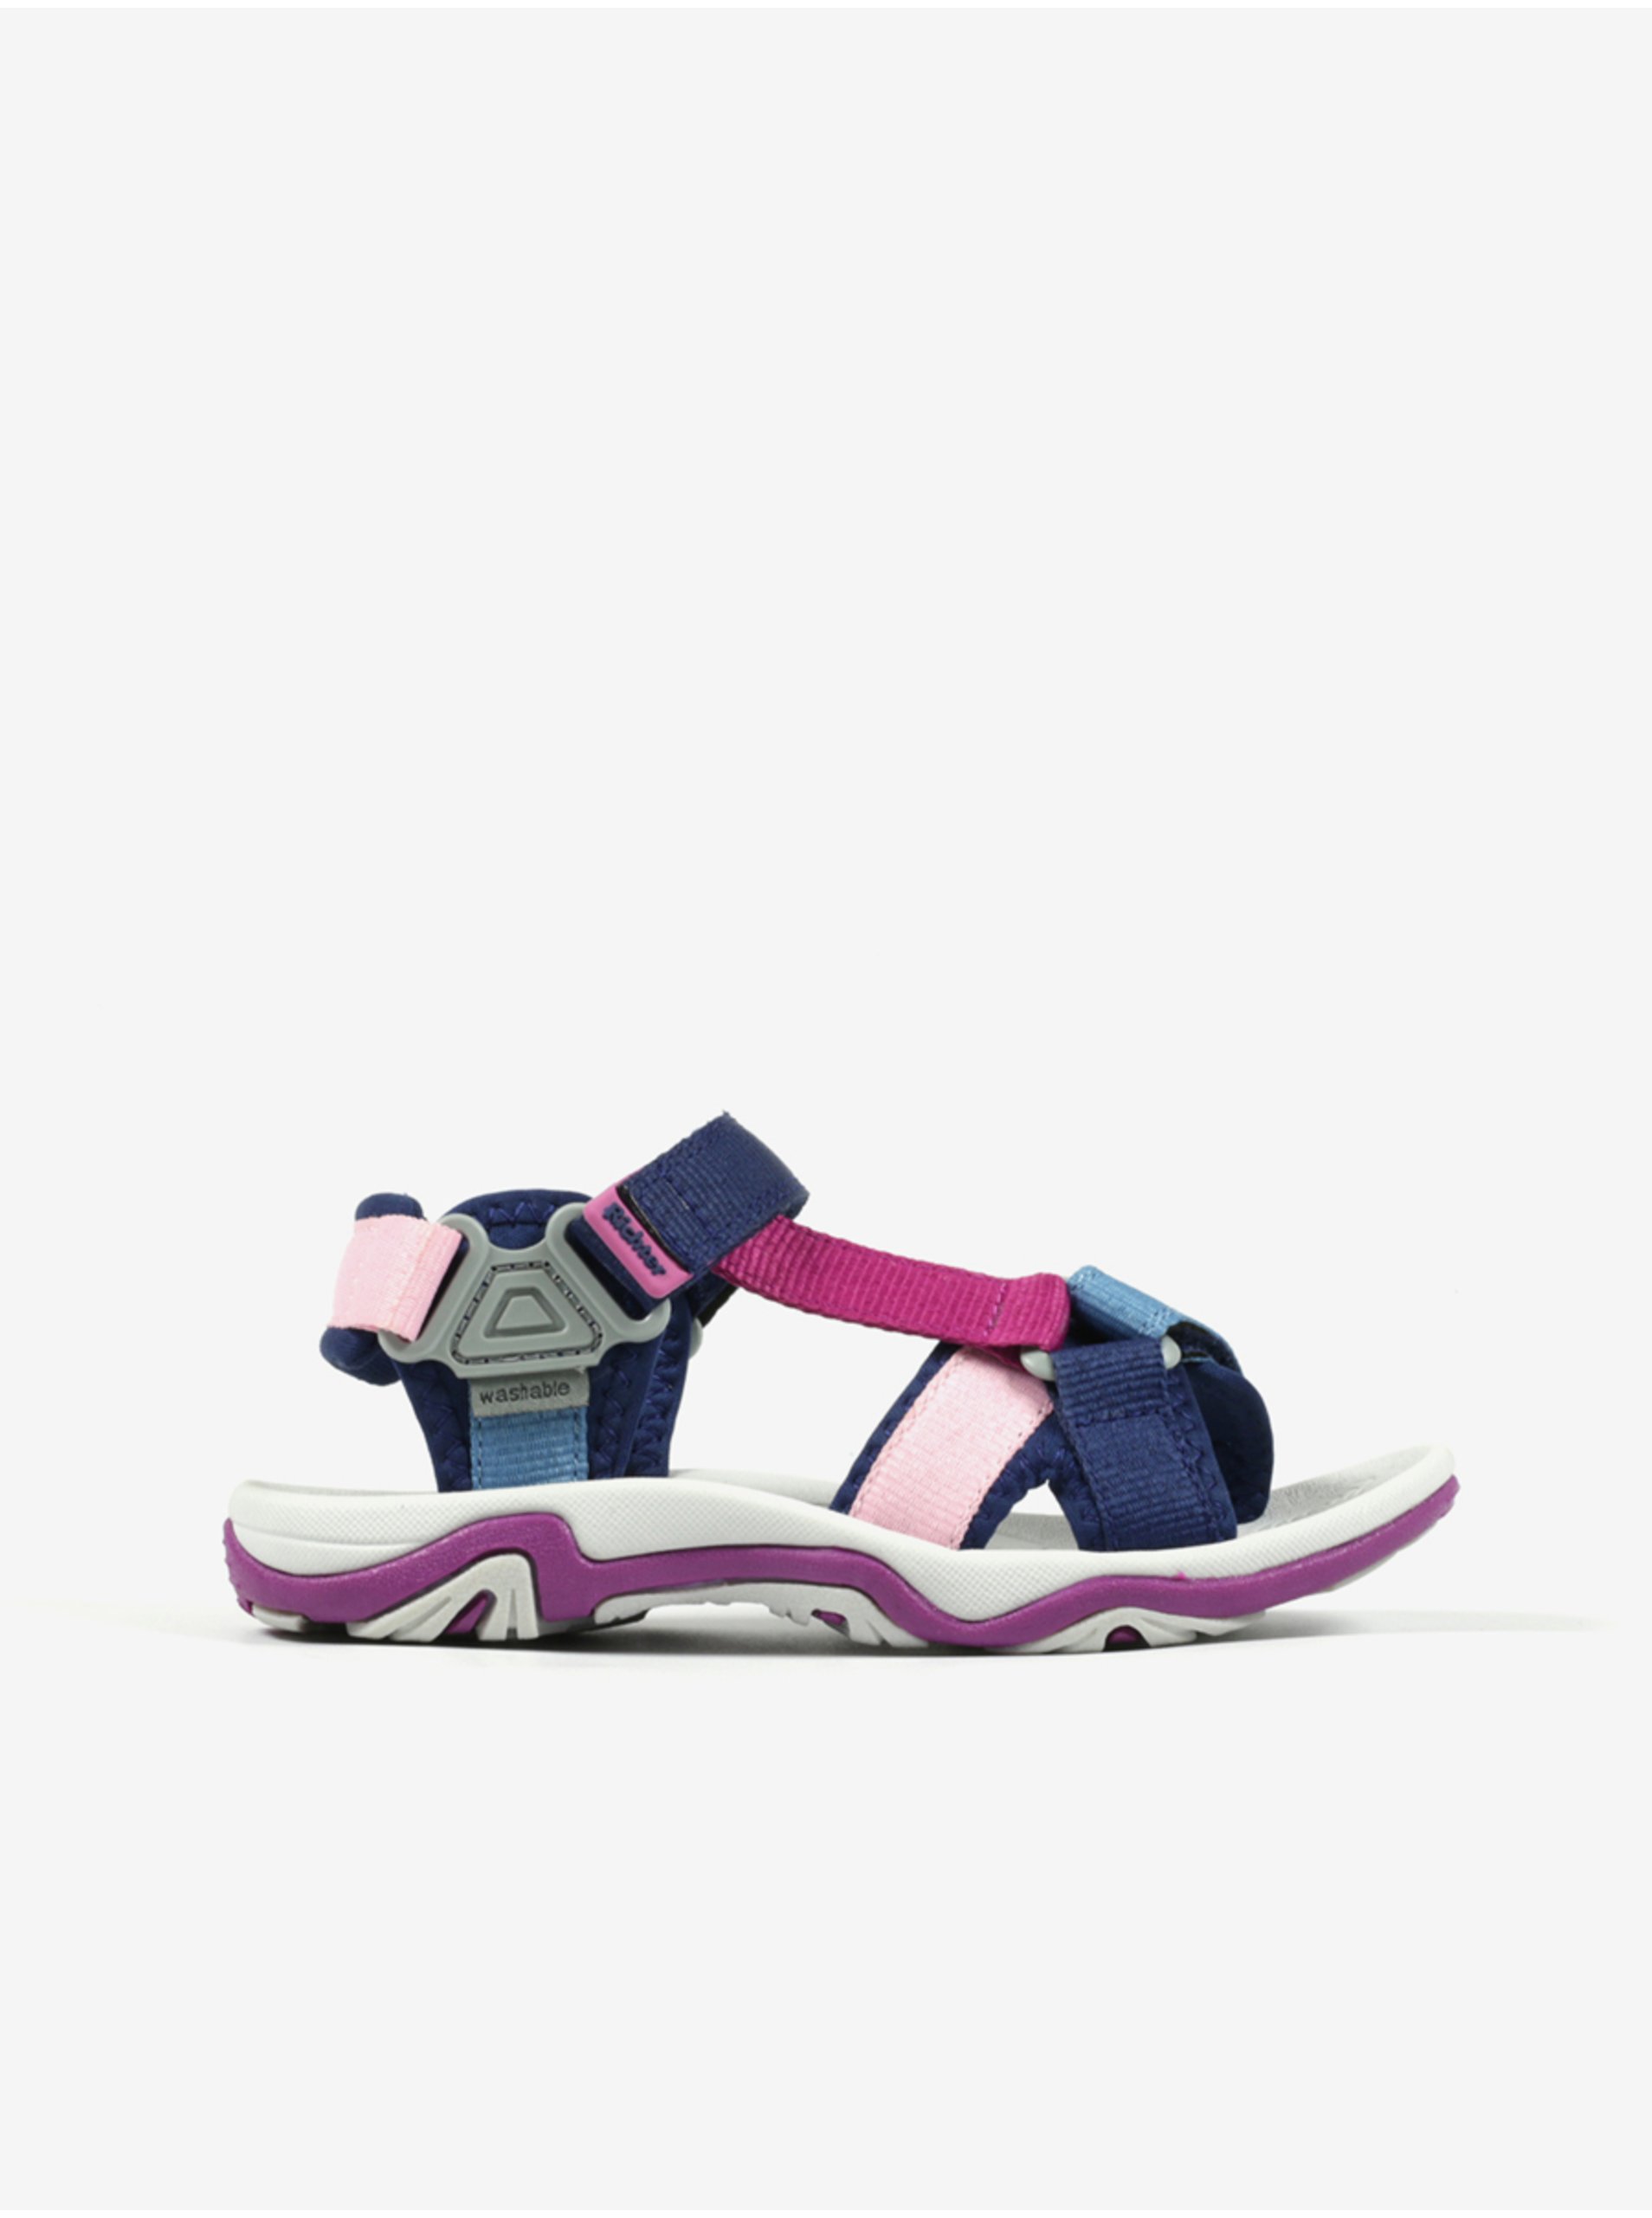 E-shop Růžovo-modré holčičí sandály Richter